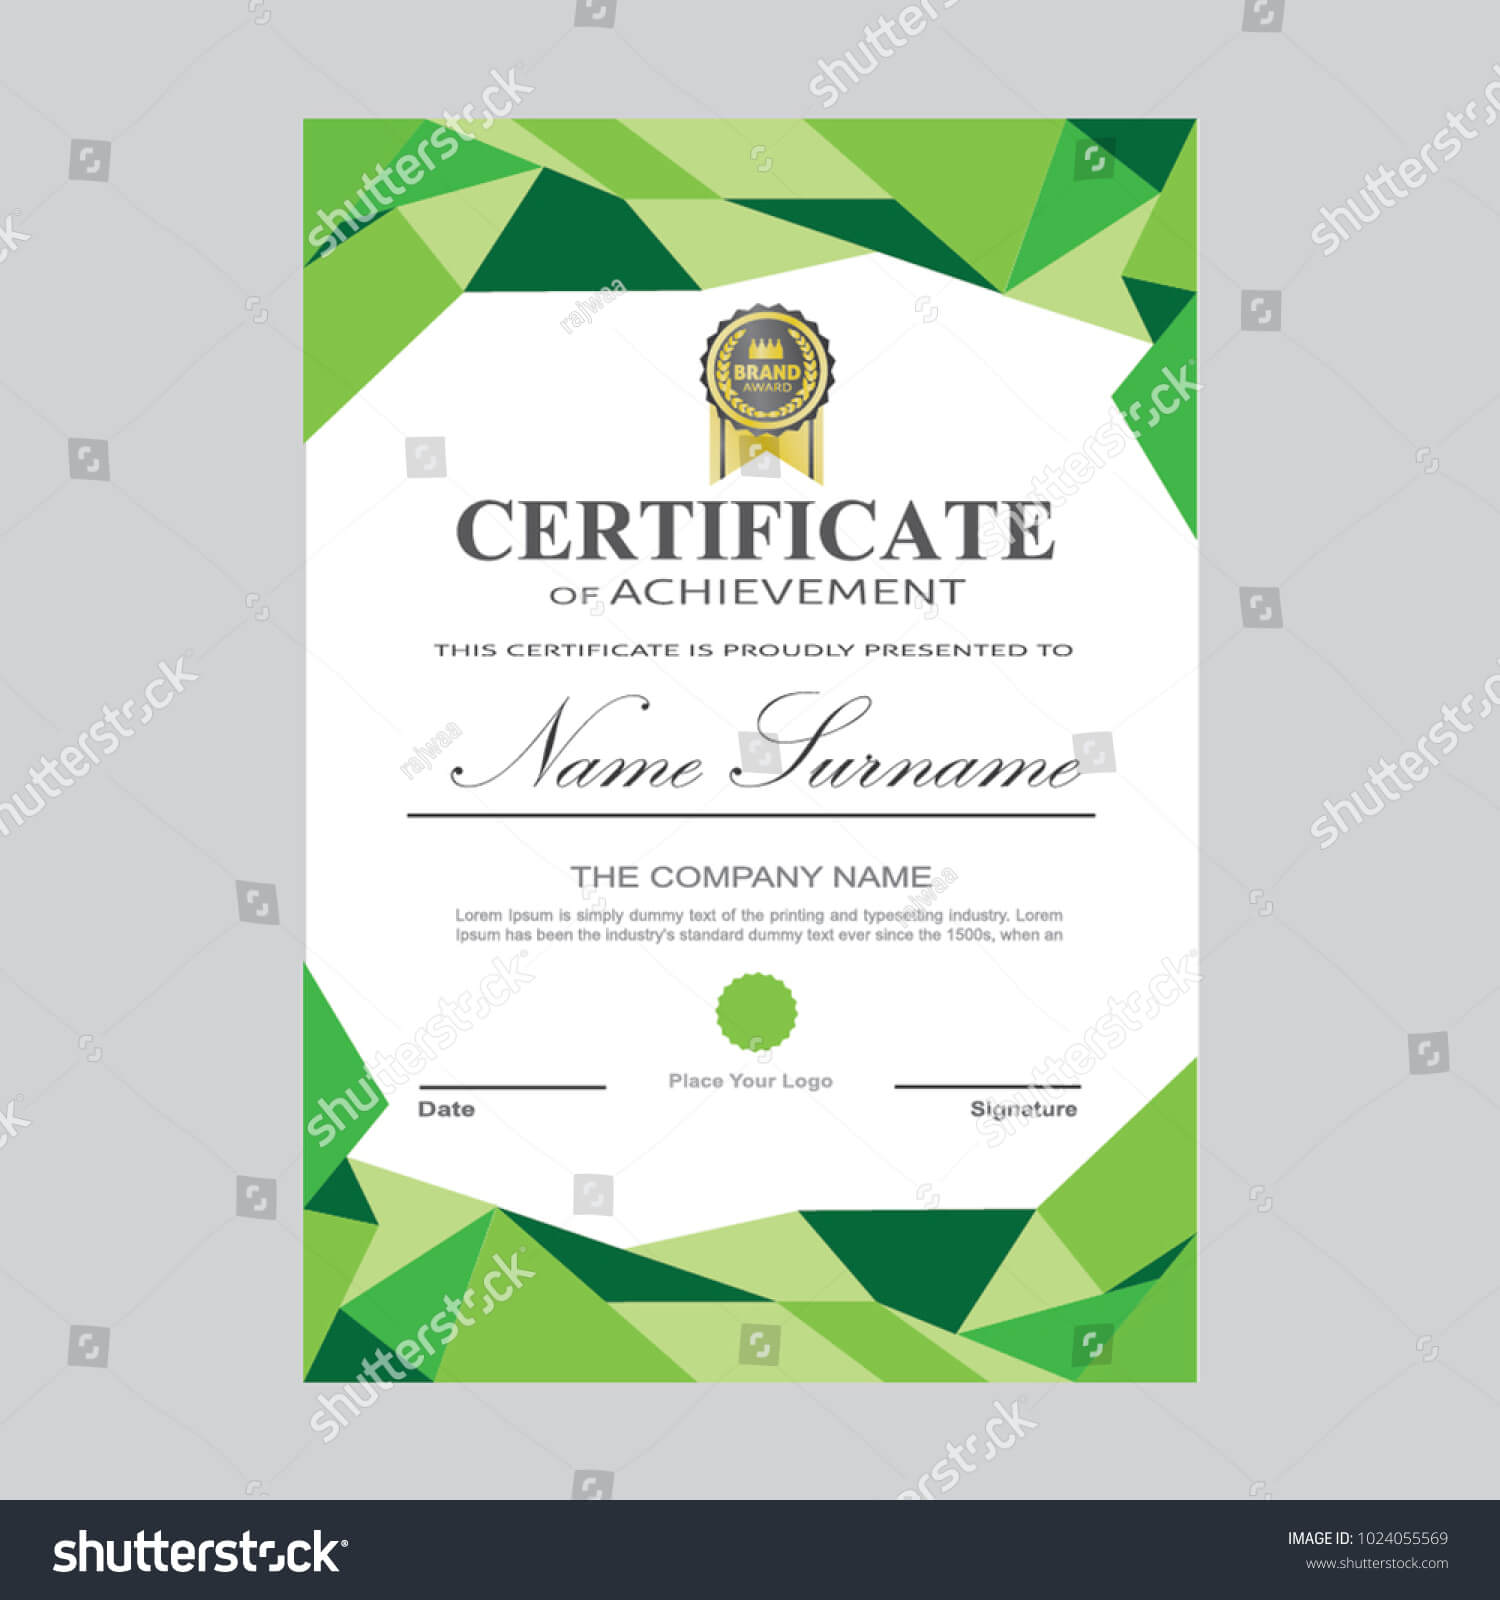 Certificate Template Modern A4 Horizontal Landscape Stock Inside Landscape Certificate Templates